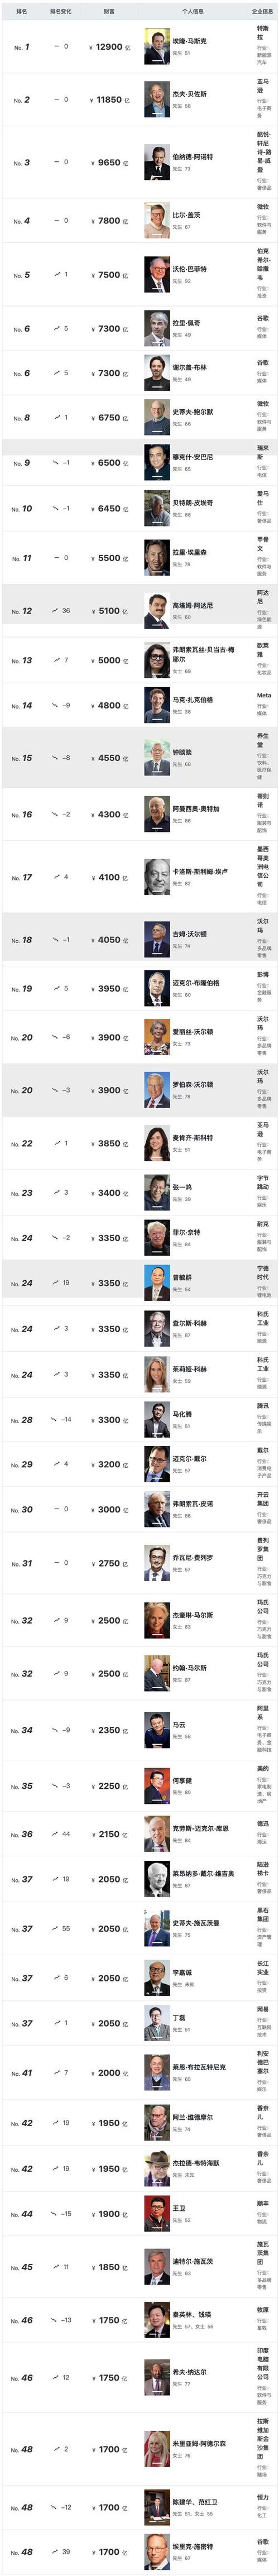 2022胡润全球富豪榜top100